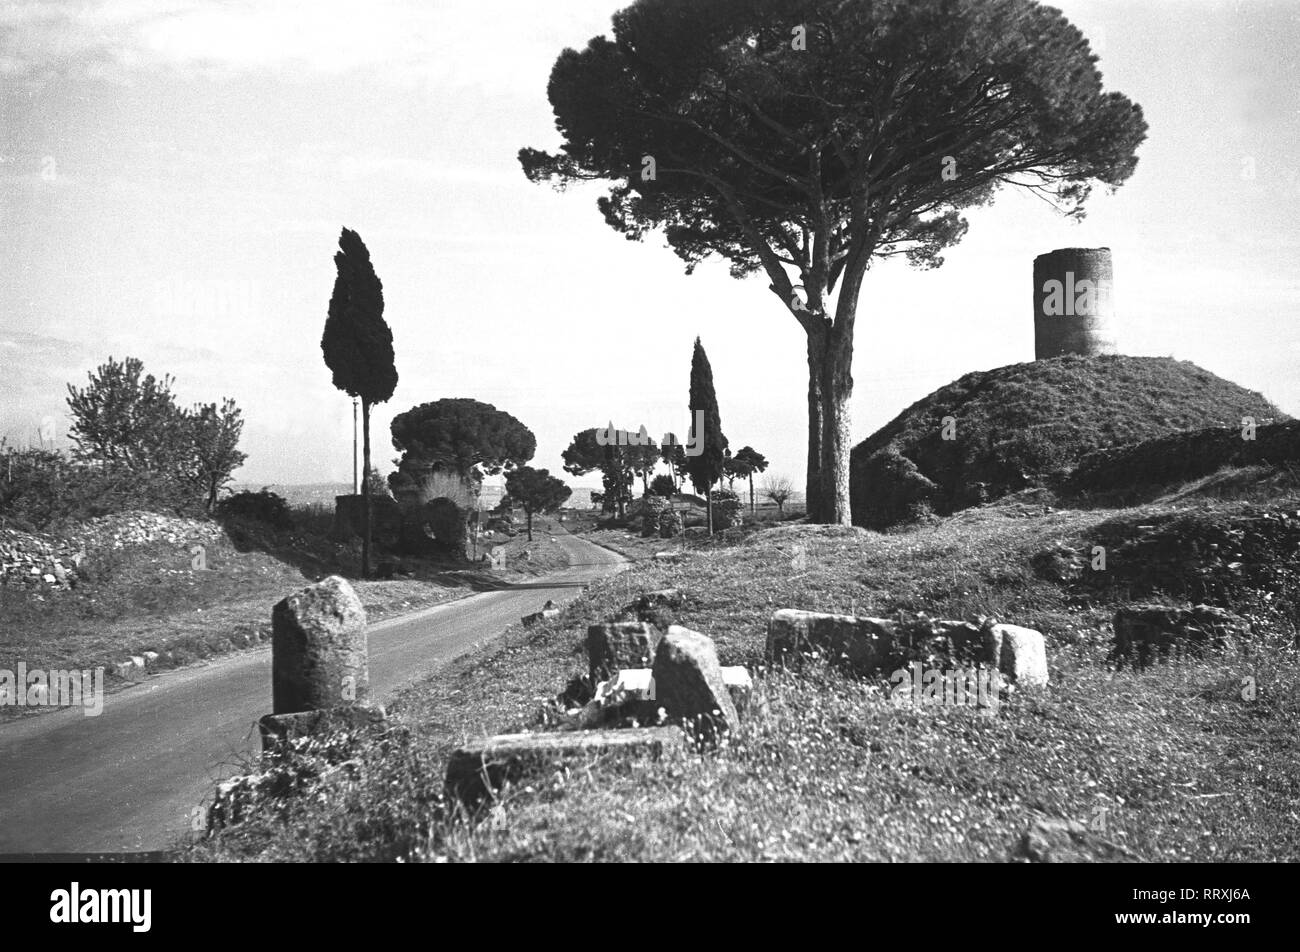 Italienisch - Via Appia Antica in Rom, 1960. Foto von Erich Andres Italien, Italia, Rom, Roma, Reisen, viaggio, Via Appia Antica, 1960 Via Appia Antica, Rom, Italien, Ca. 1960 Stockfoto